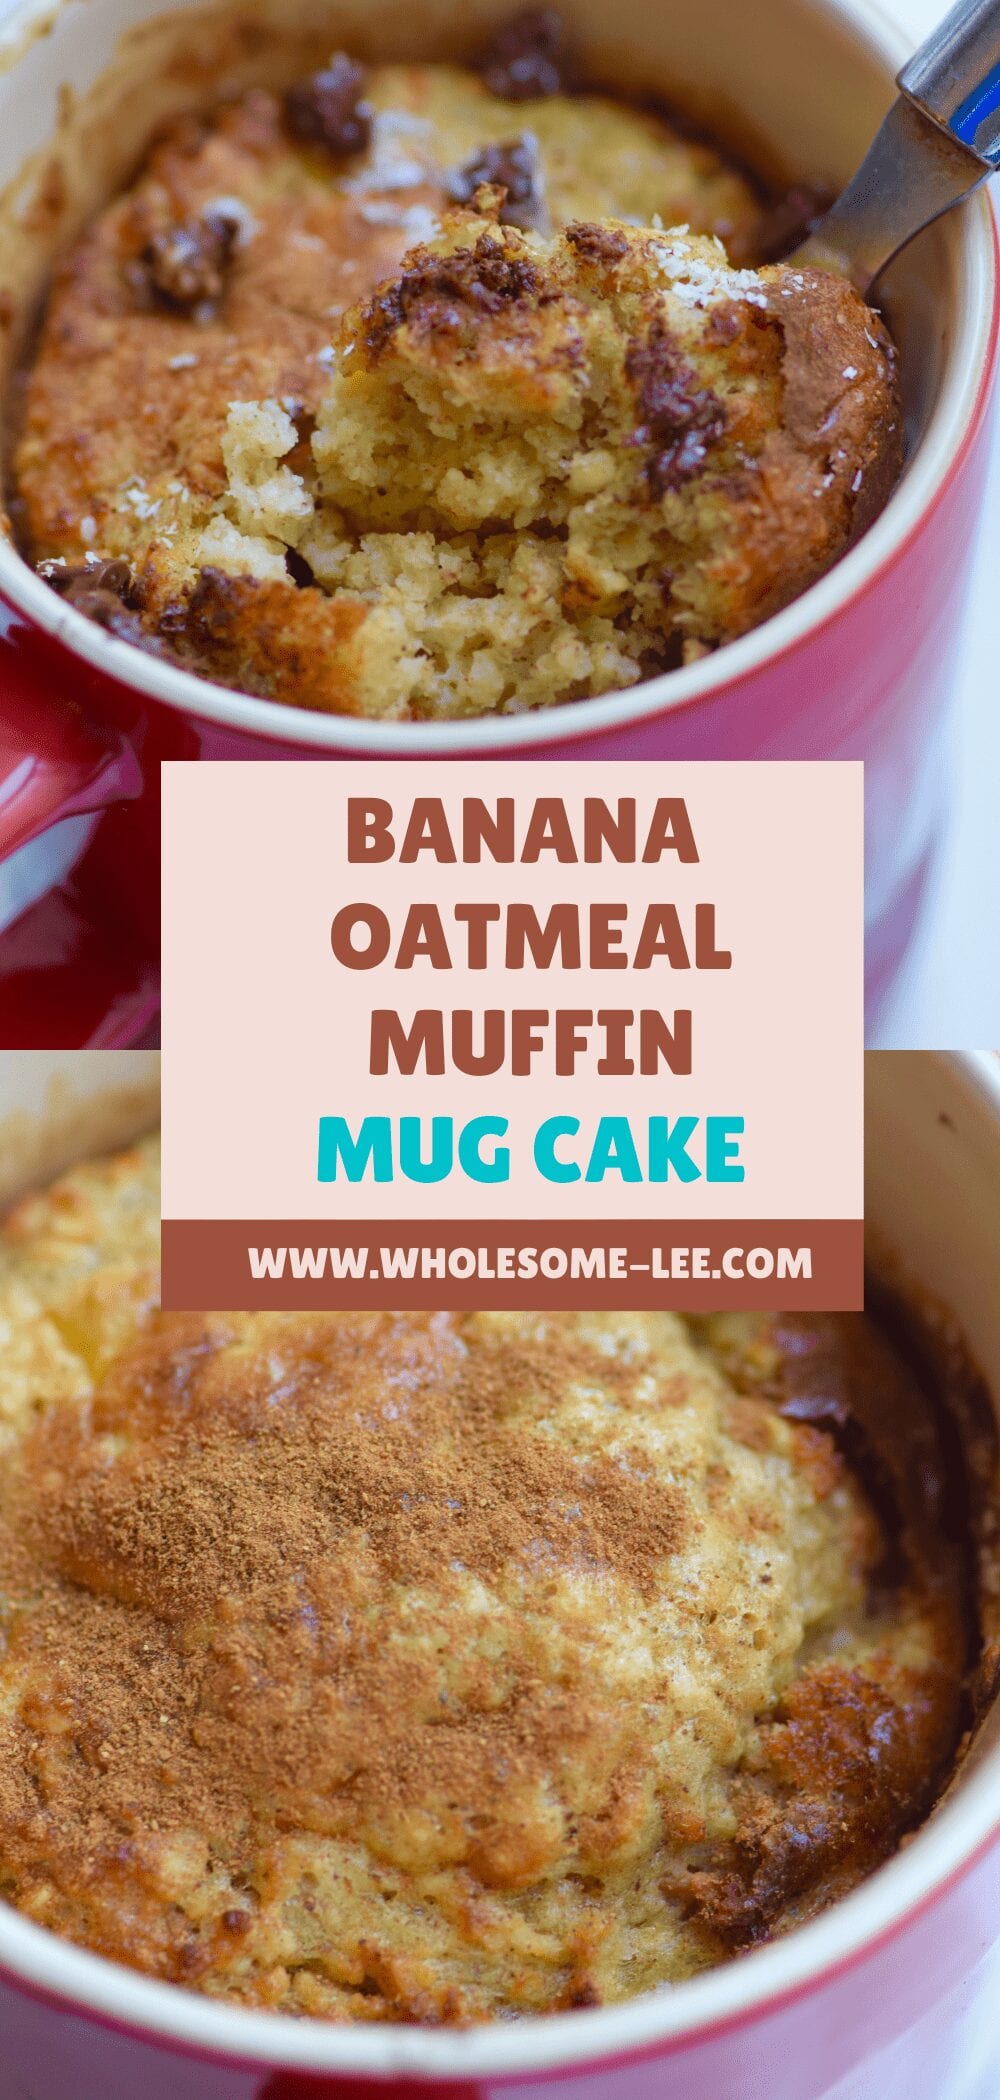 Banana Oatmeal Muffin Mug Cake